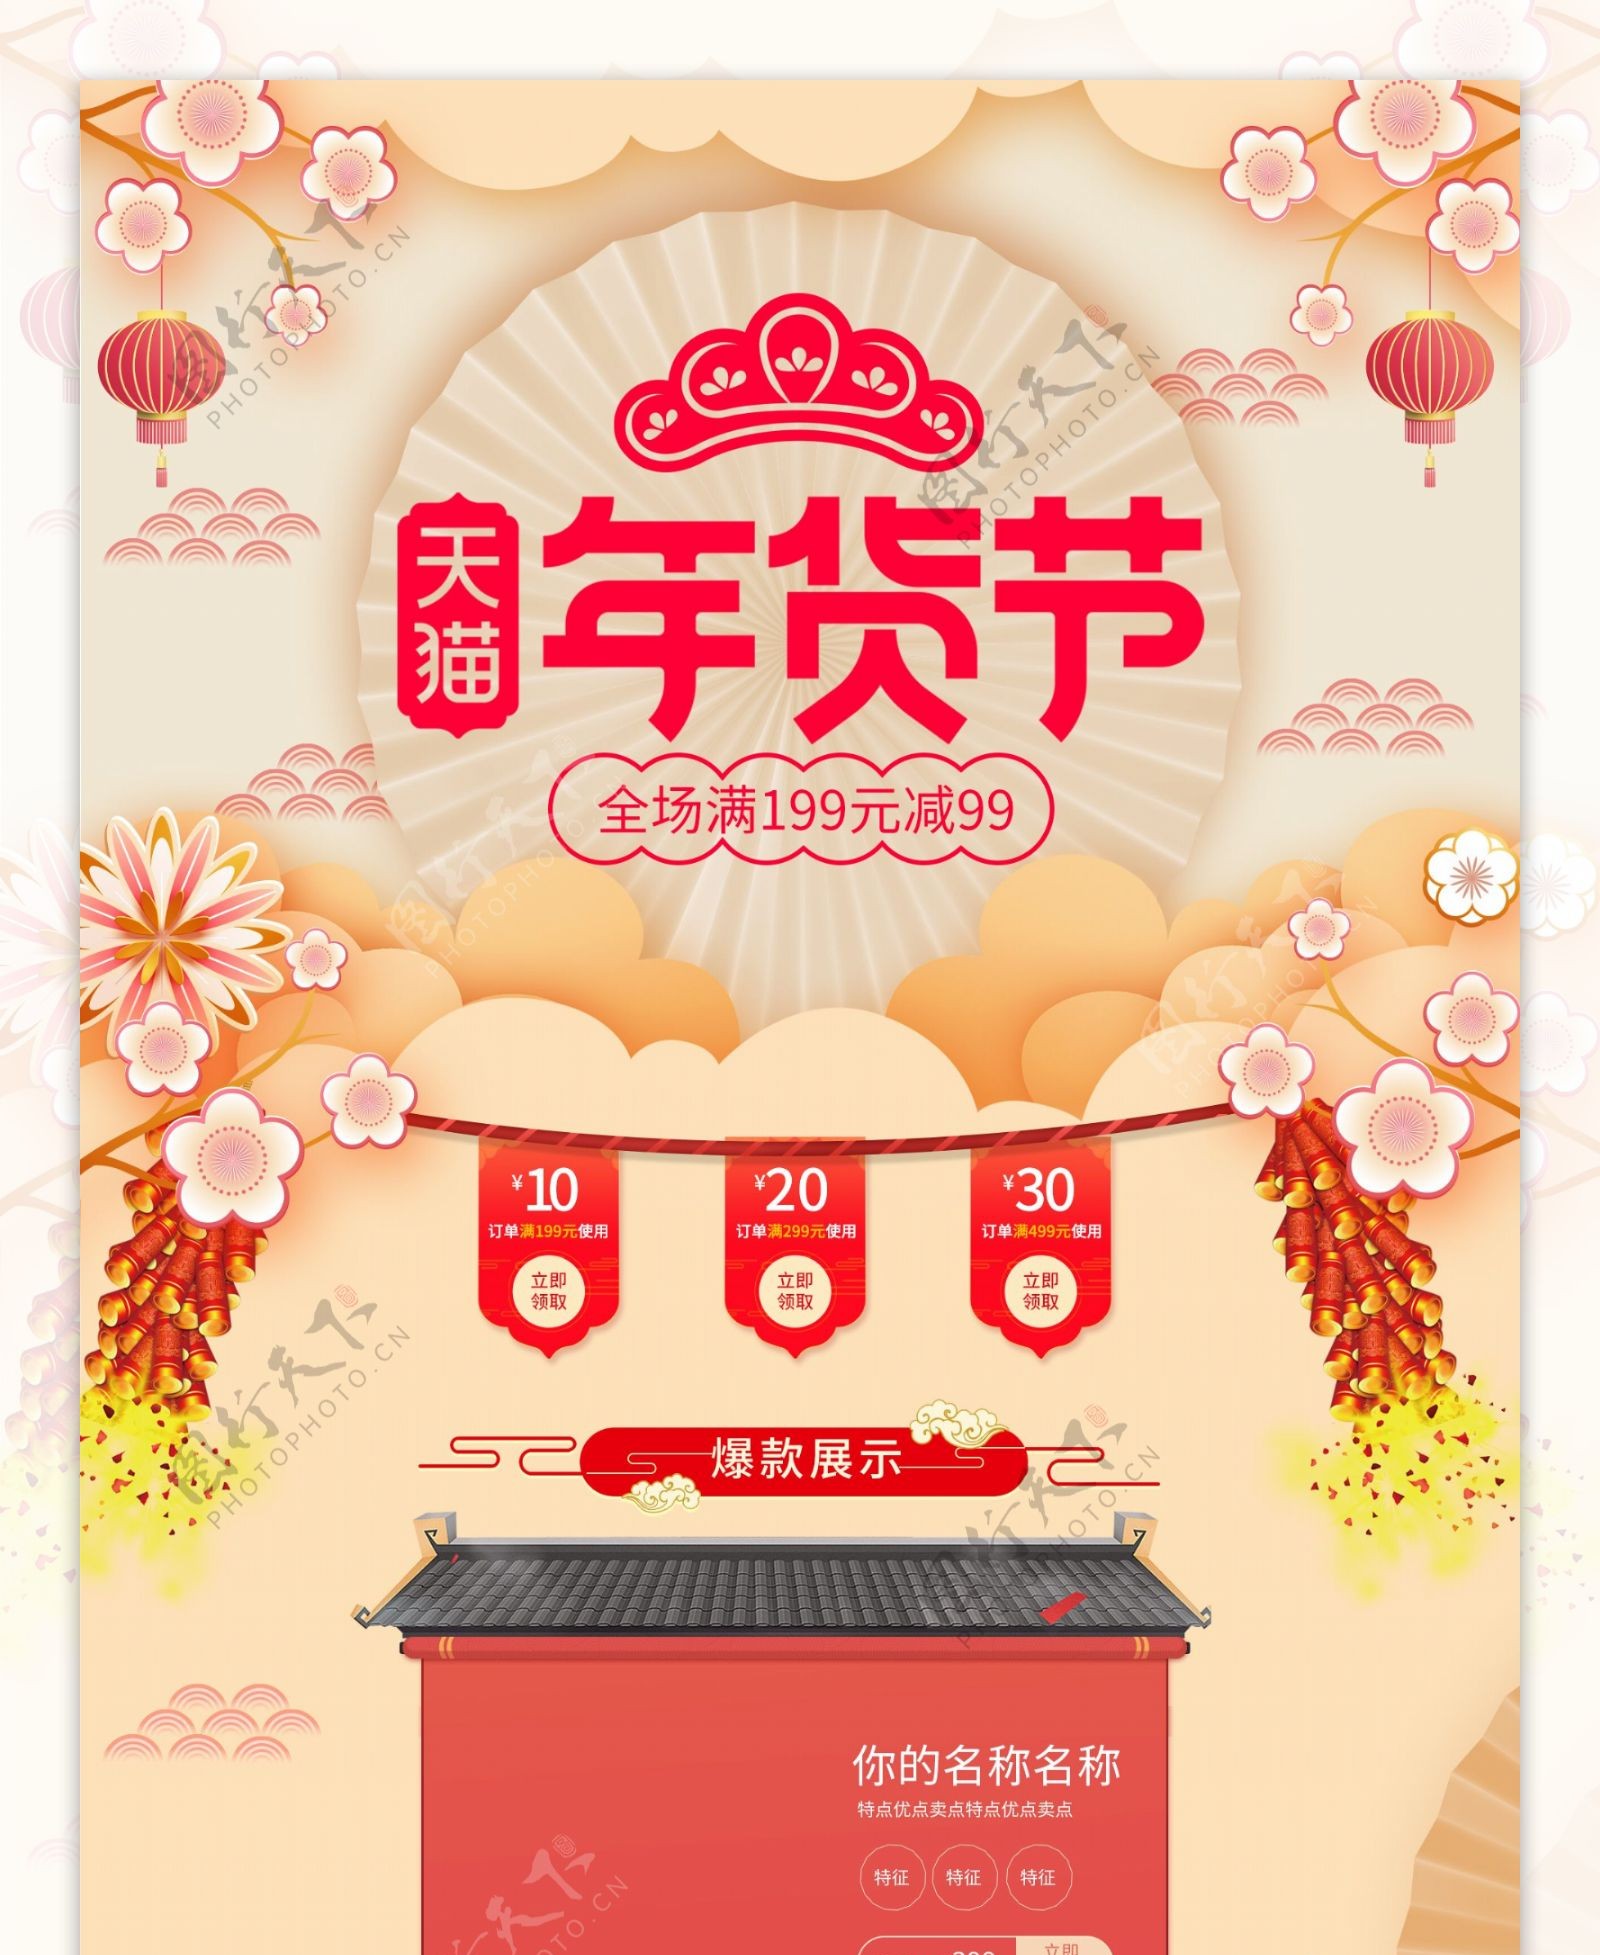 中国风暖黄色调新年首页年货节促销模板